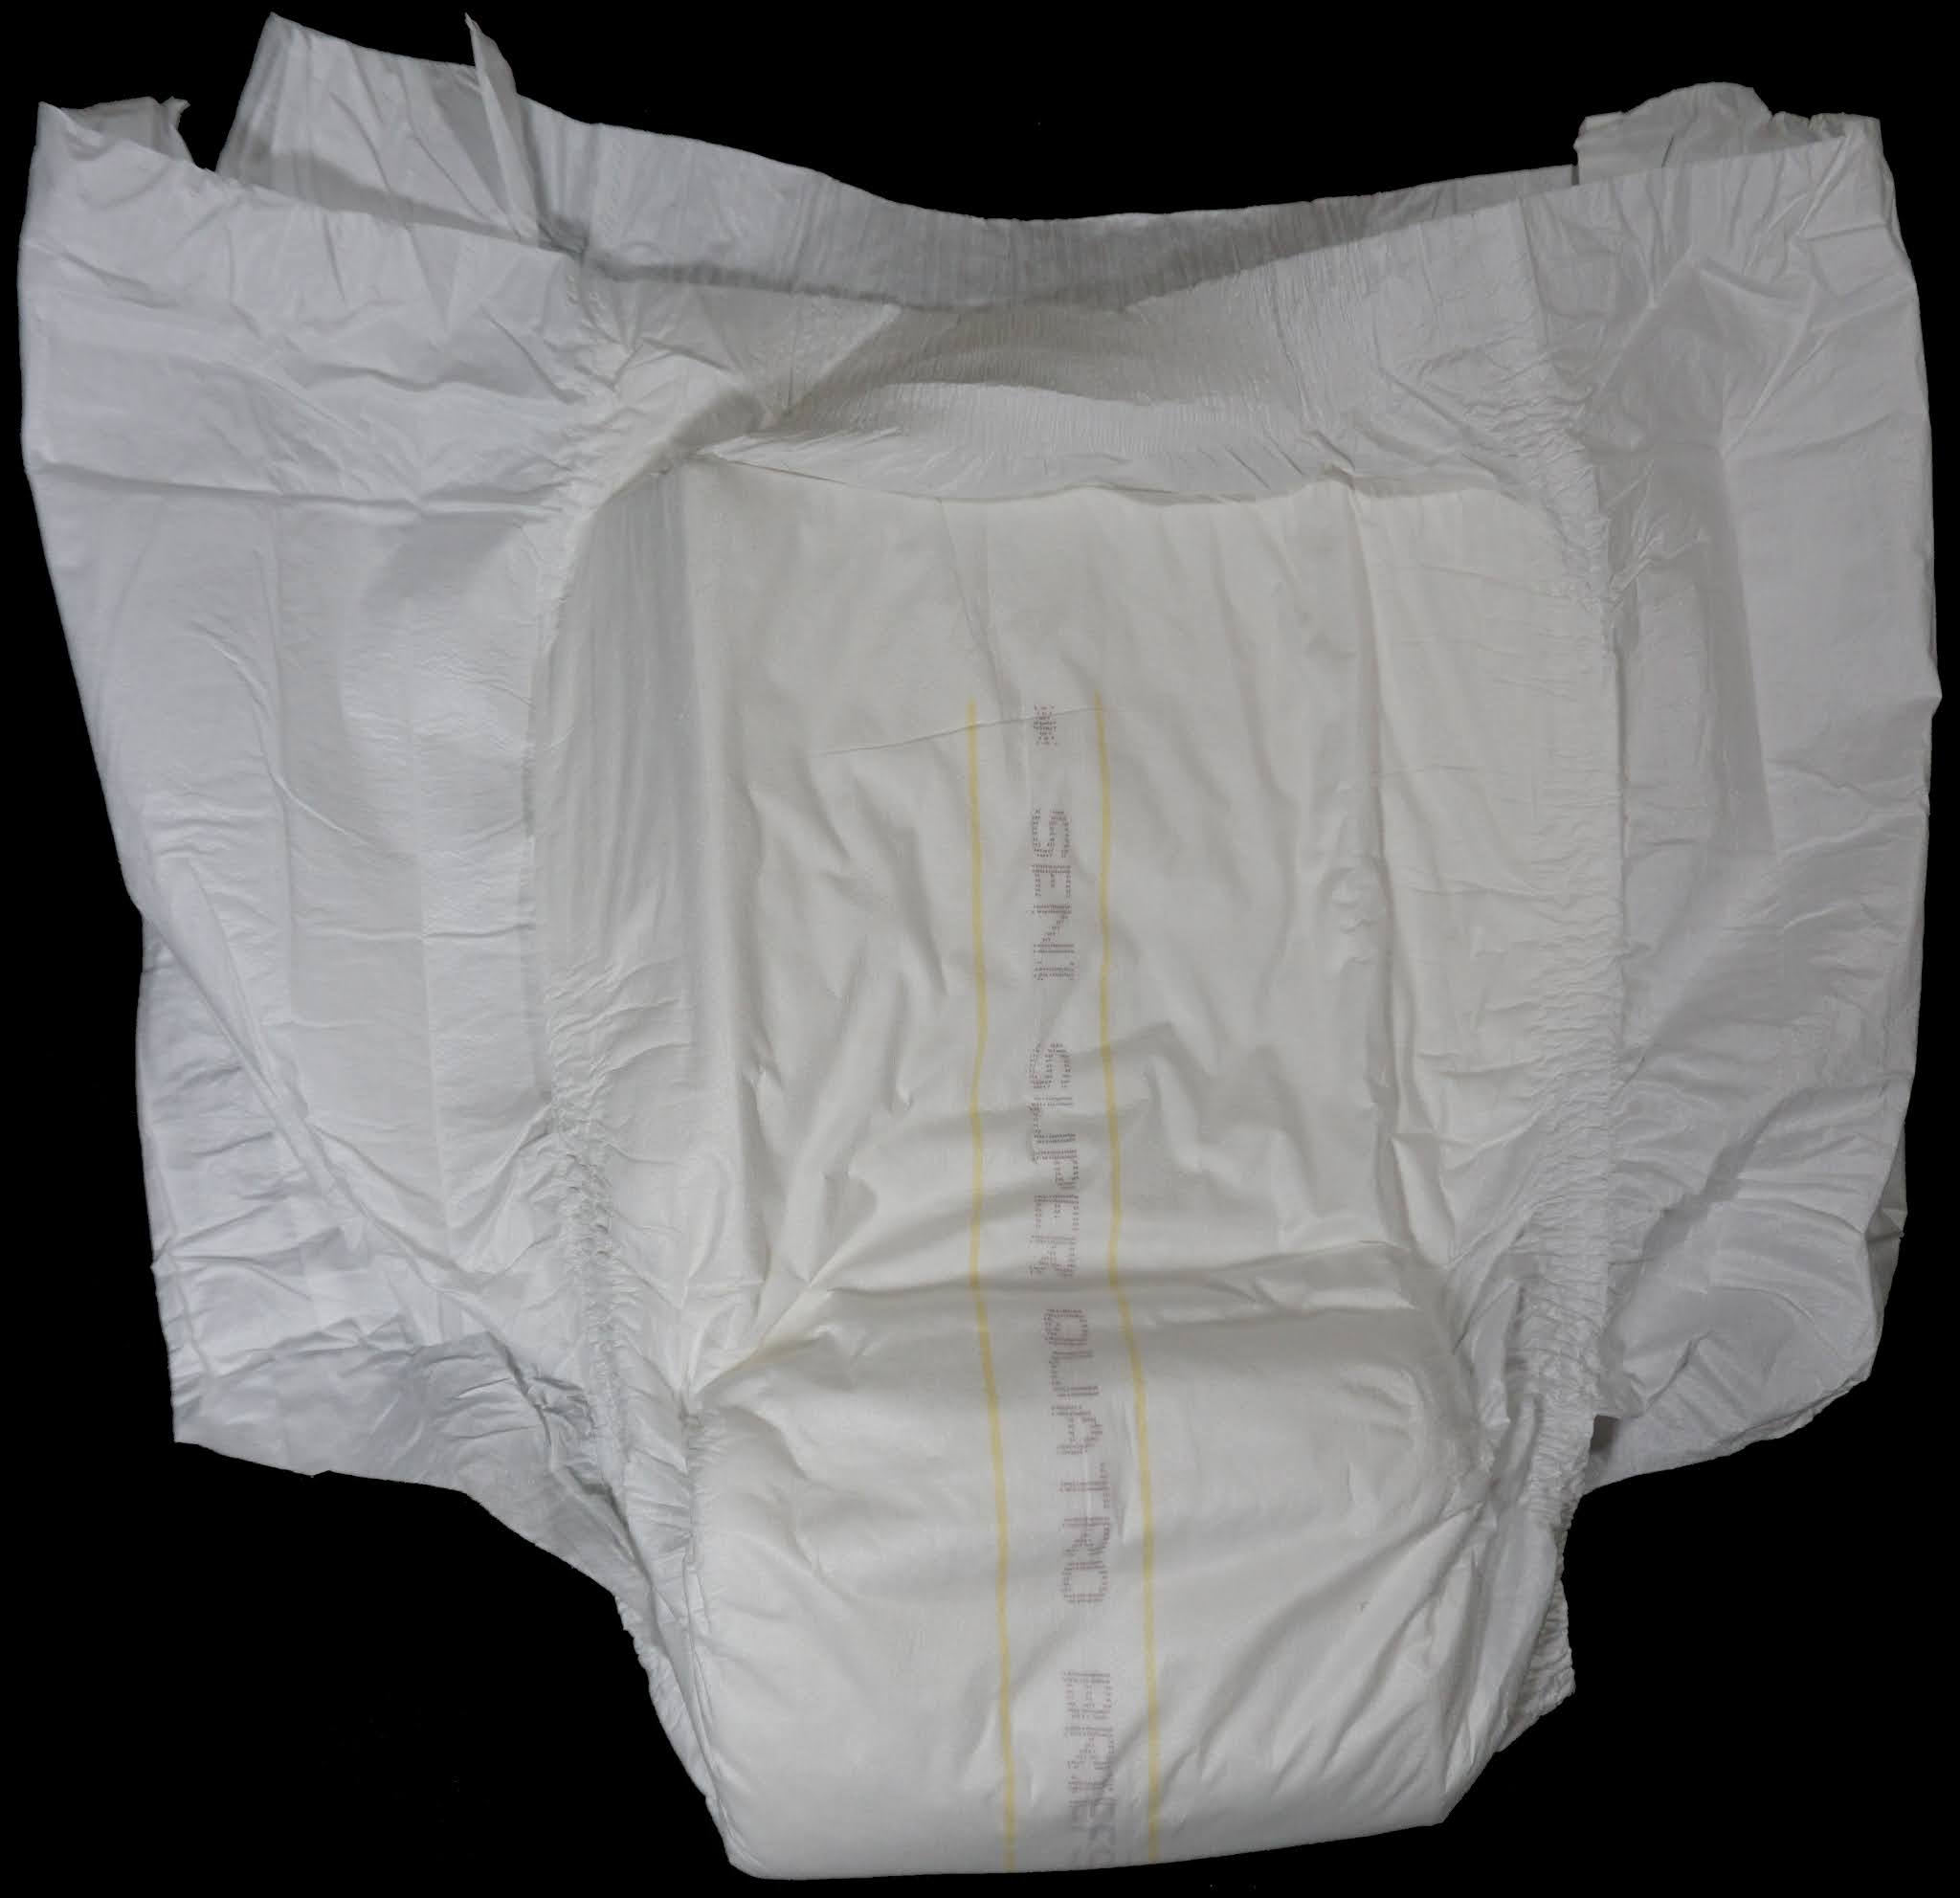 Diaper Metrics Seni Super Quatro Adult Diaper Review image picture